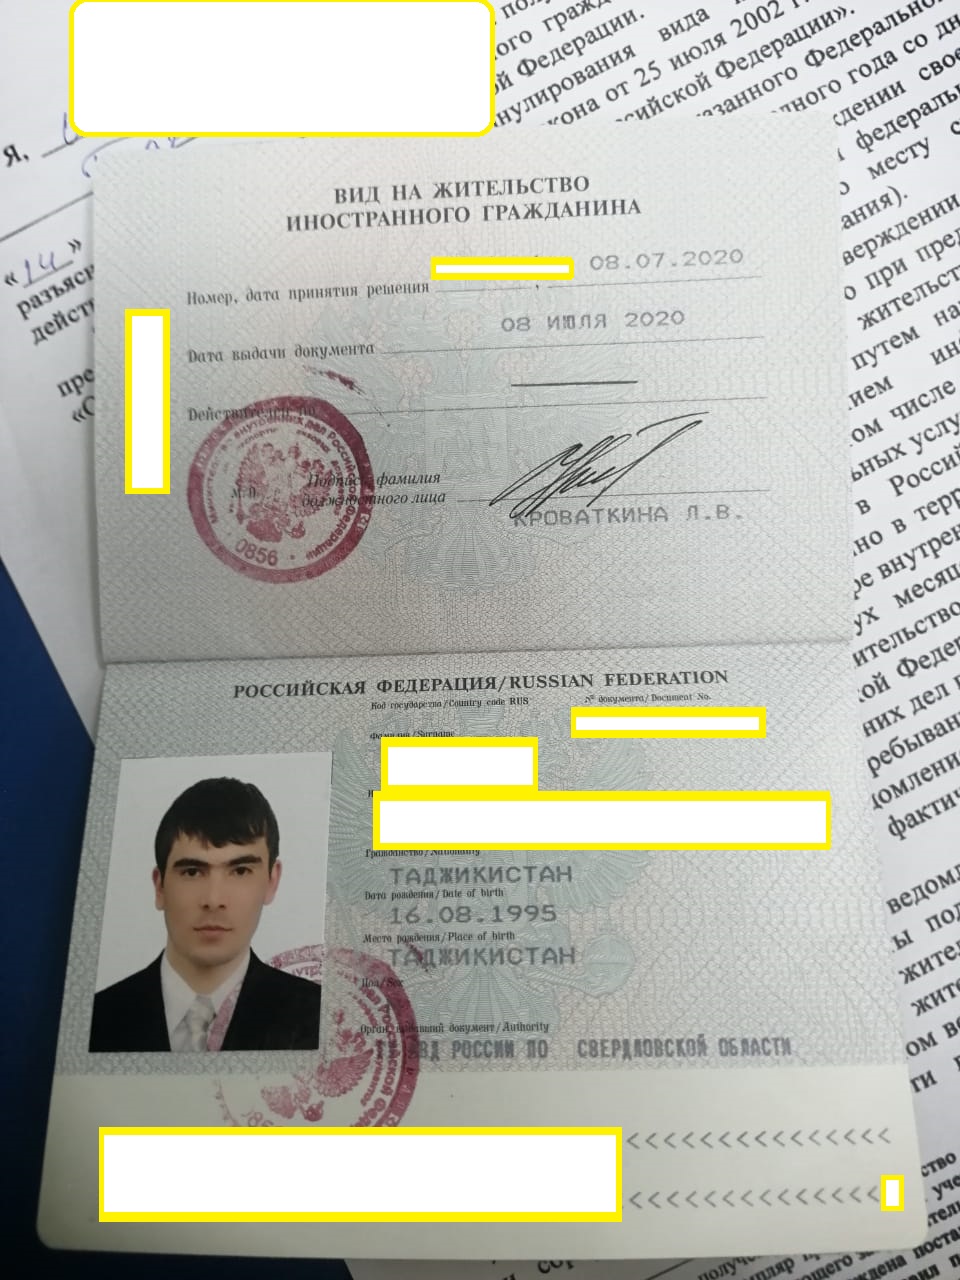 Гражданство таджиков россии. Вид на жительство Таджикистан. Вид на жительство гражданина Таджикистана.